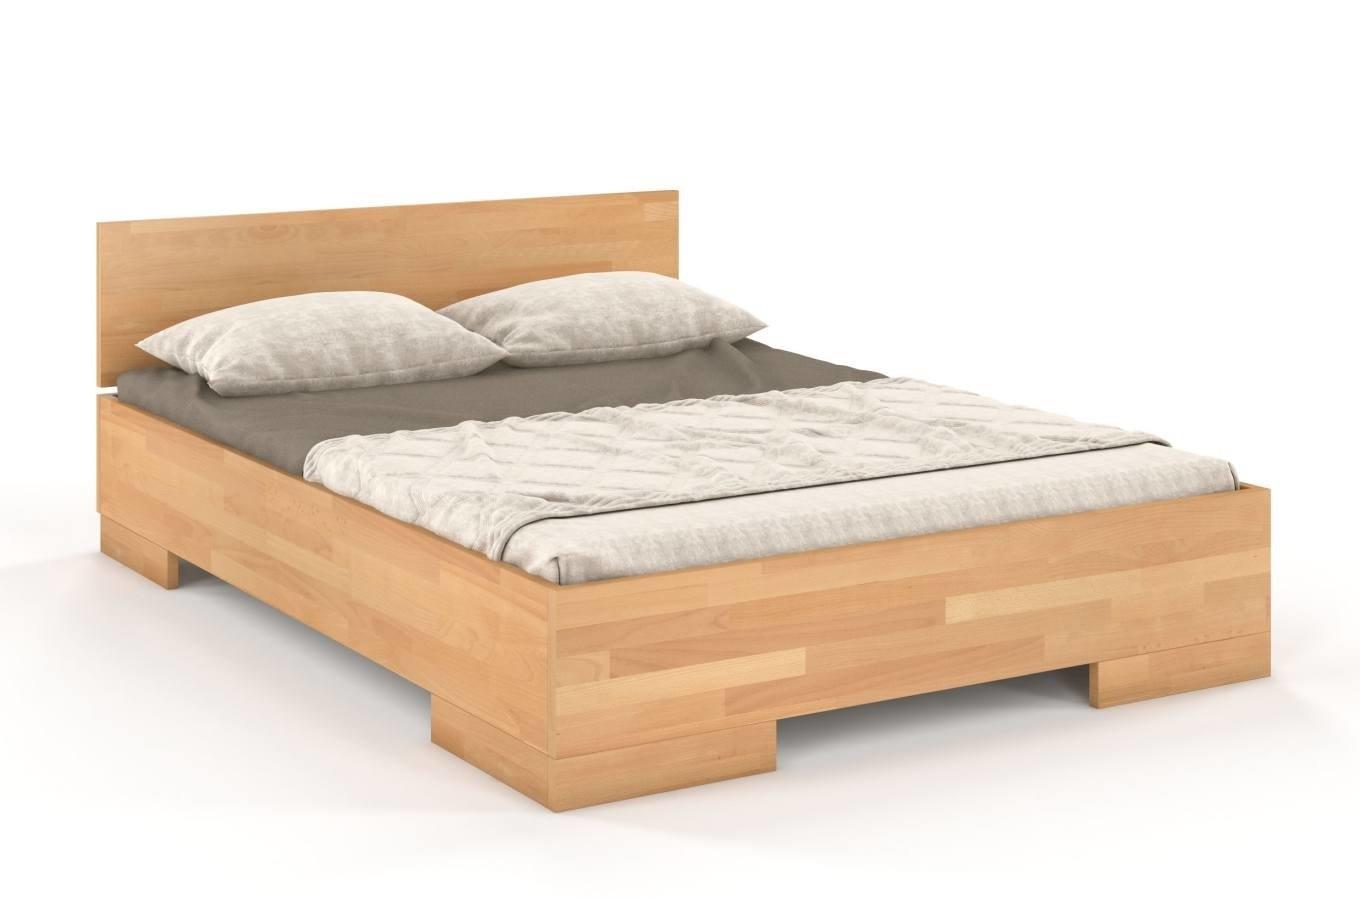 Łóżko drewniane bukowe Skandica SPECTRUM Maxi / 160x200 cm, kolor naturalny